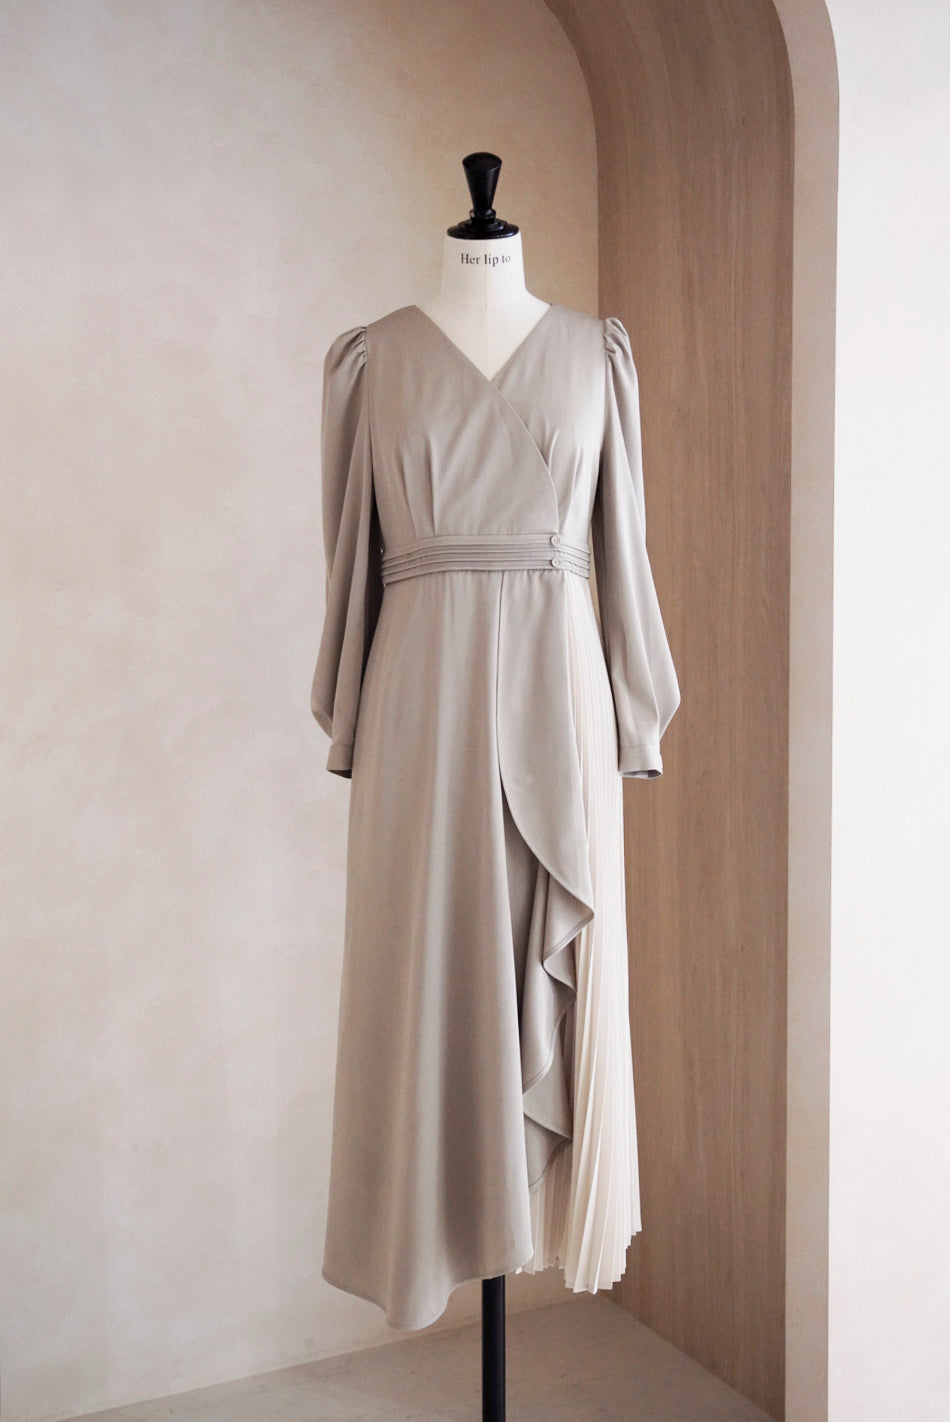 海外花系 Mayfair Ruffled Dress herlipto S cloud | southbayplanning.com